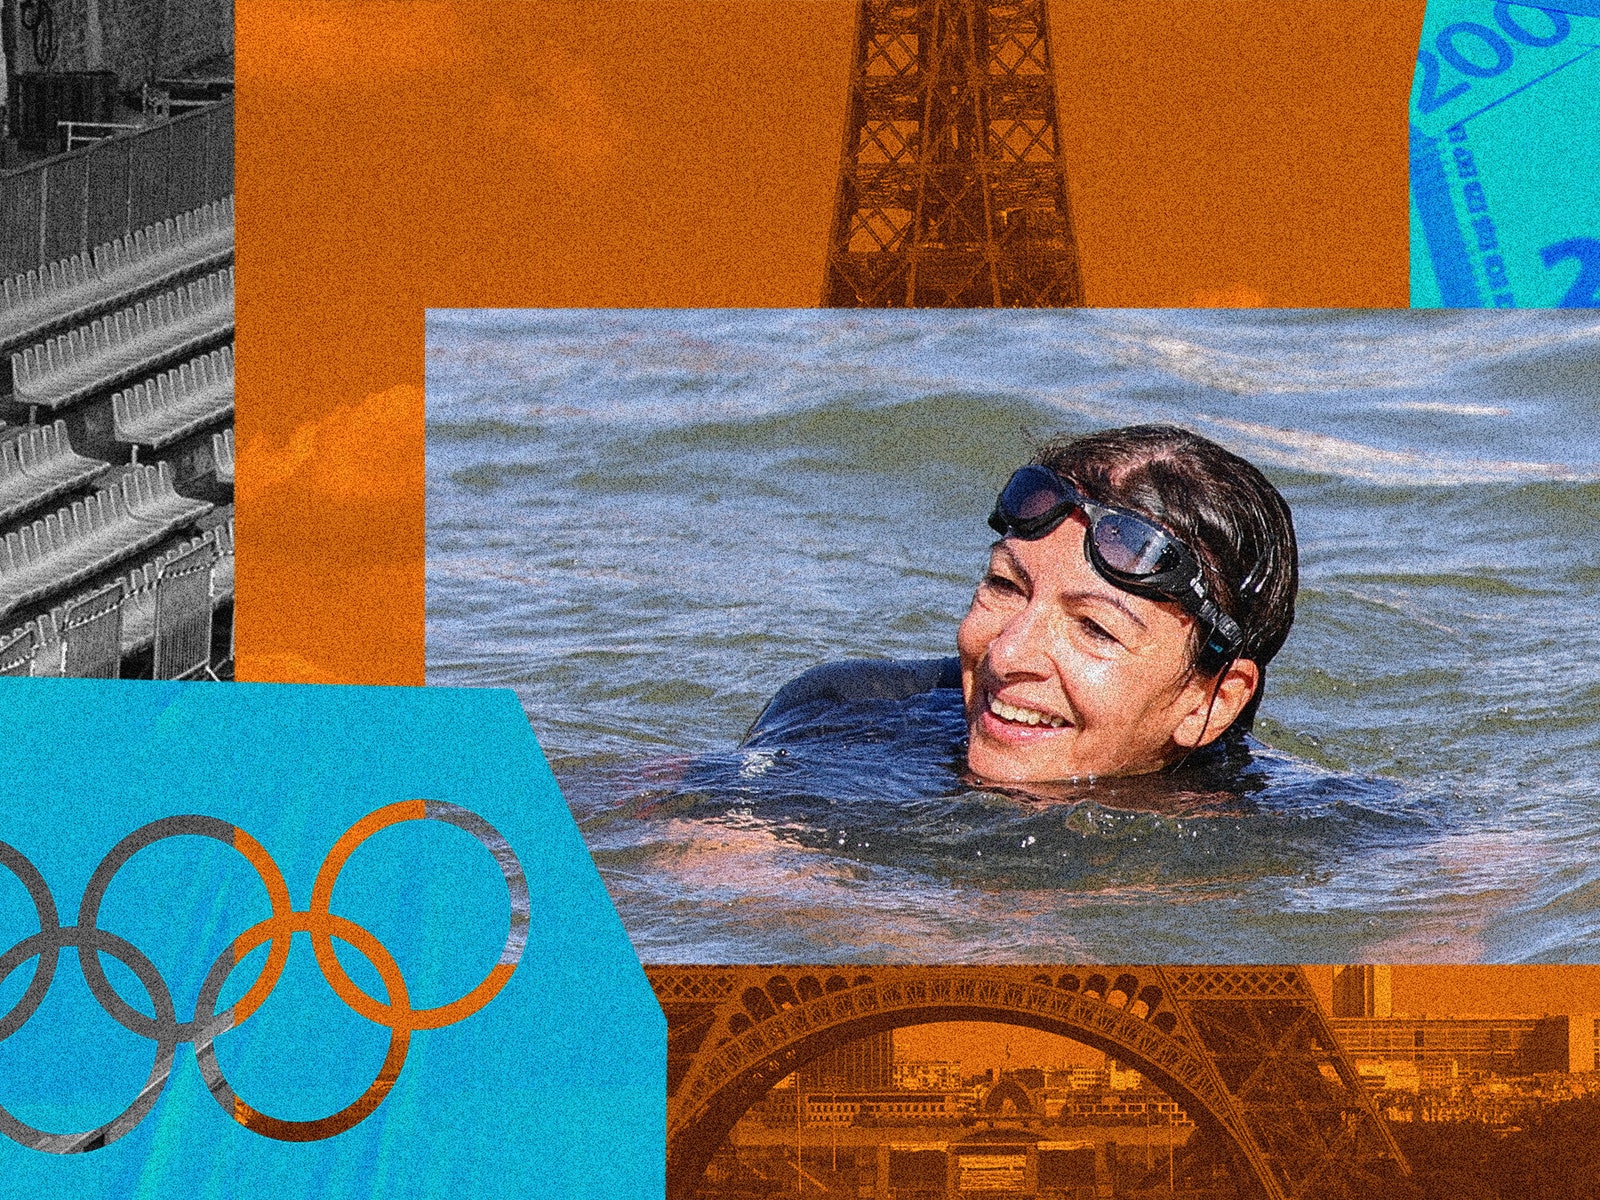 オリンピック開催を前に、パリ市長がセーヌ川で泳いだ「本当の目的」